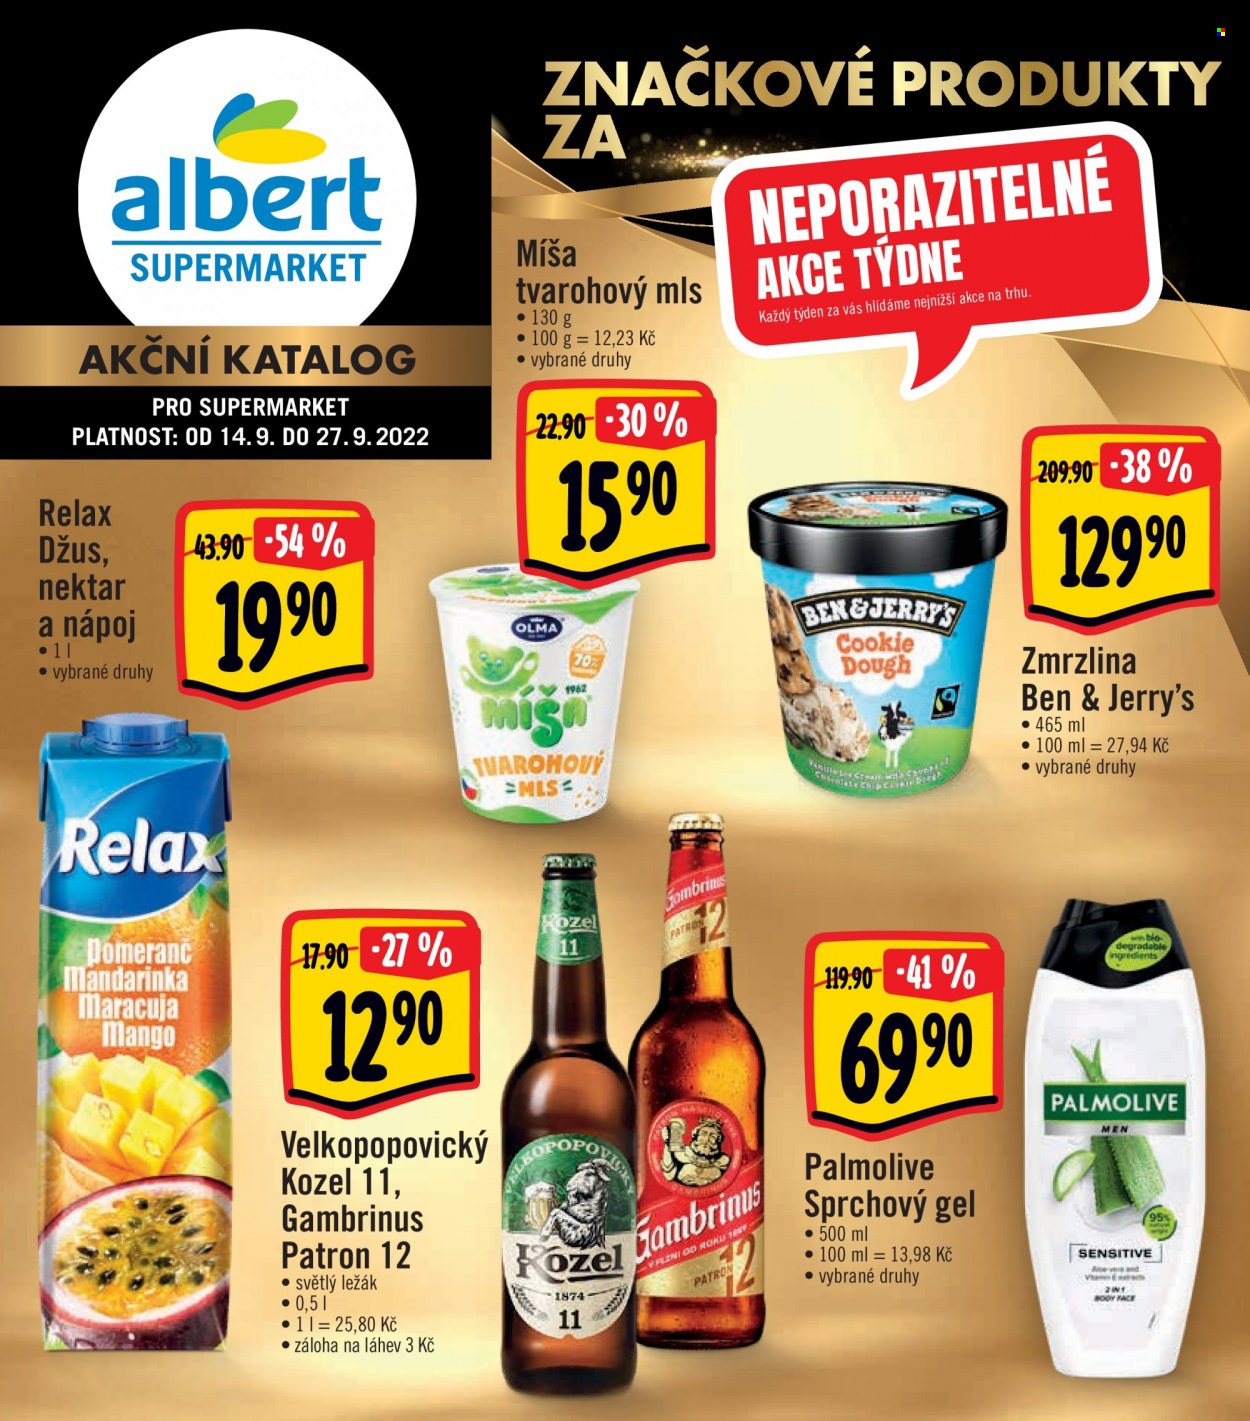 Leták Albert Supermarket - 14. 9. 2022 - 27. 9. 2022. 